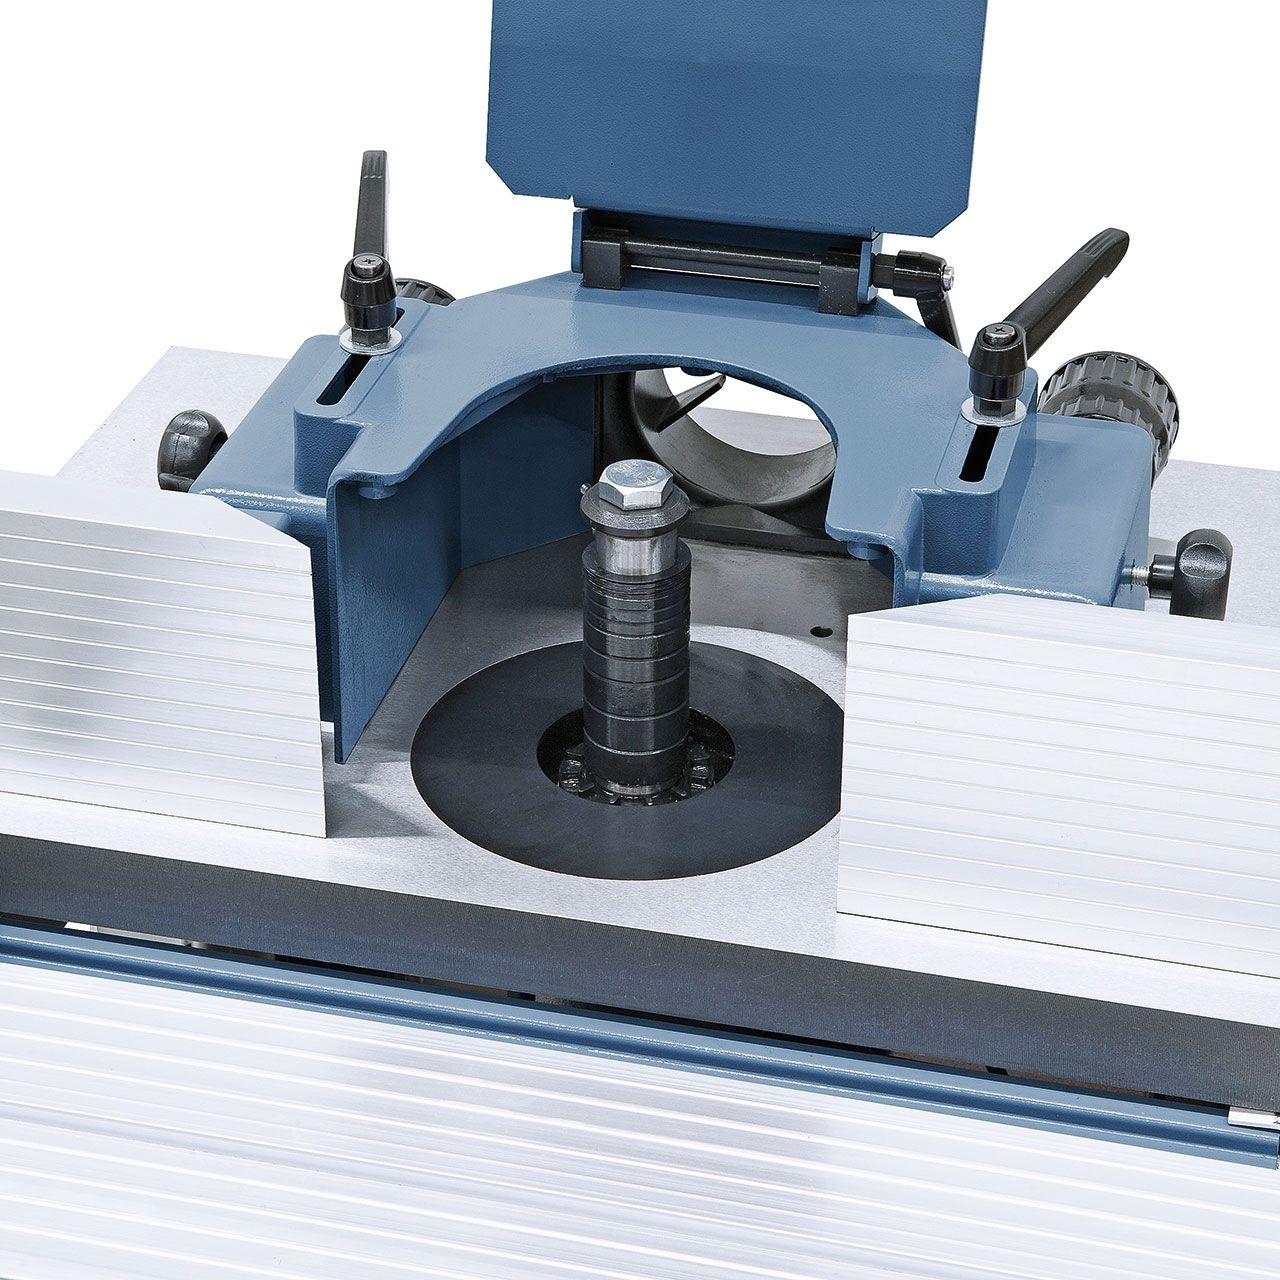 Tischfräsmaschine T 500 PR - 400 V